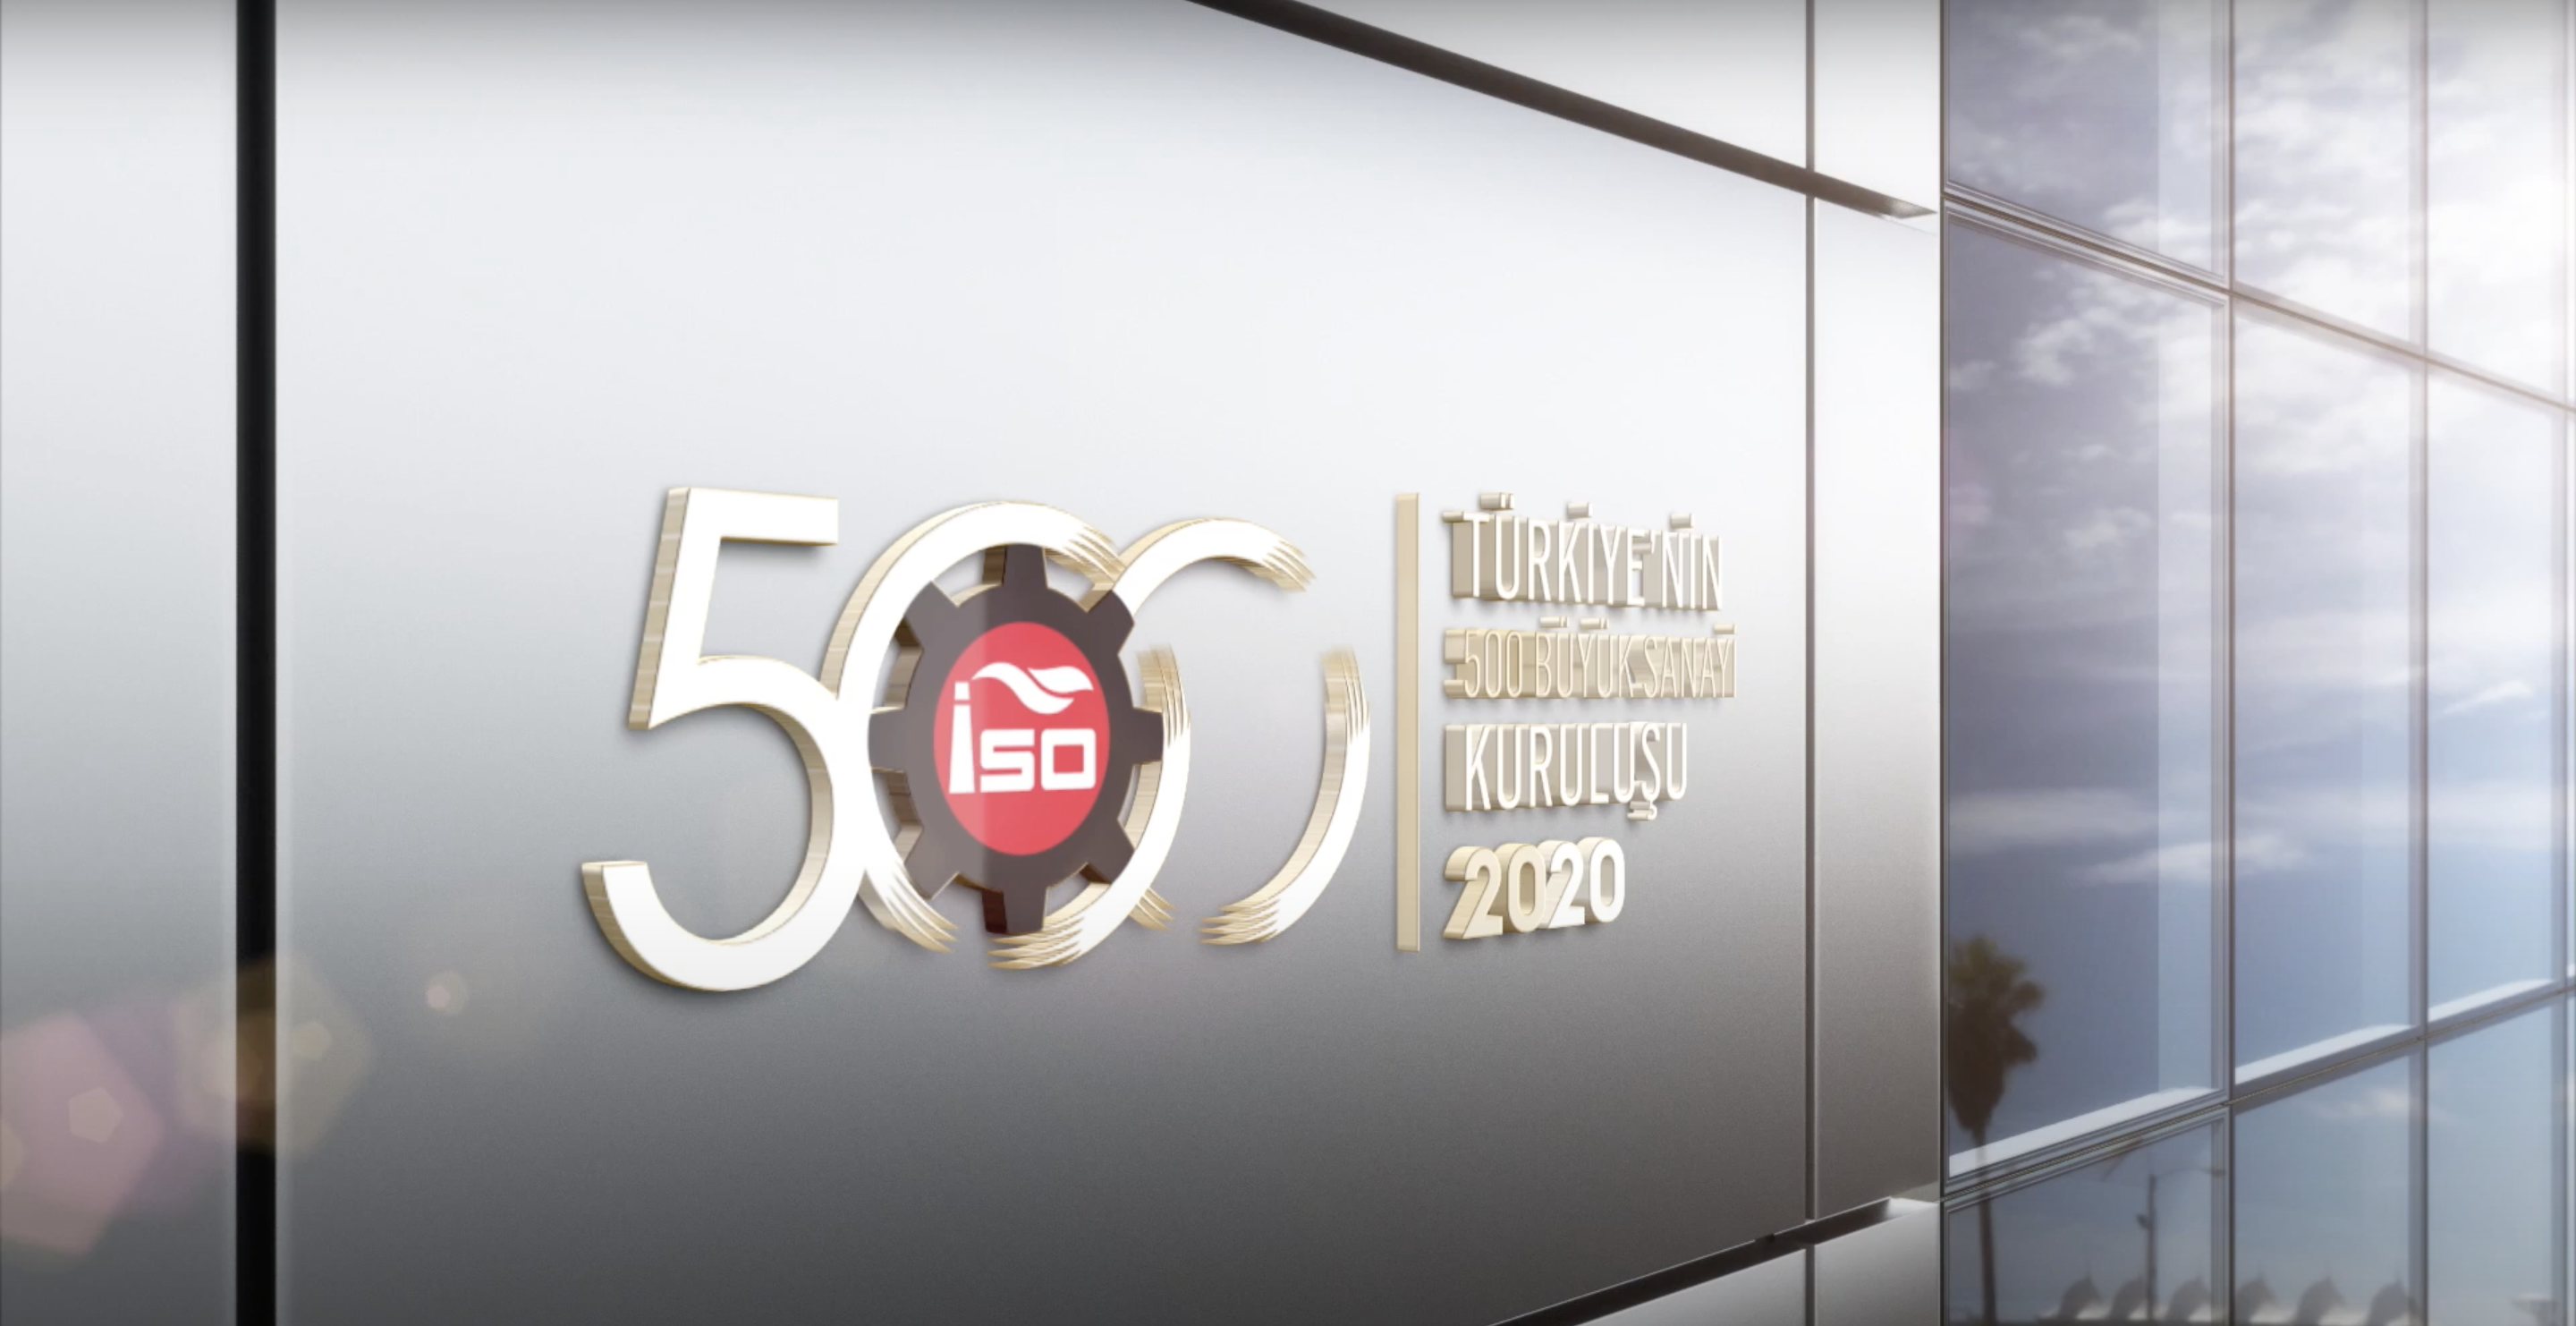 EÜAŞ, “Türkiye’nin 500 Büyük Sanayi Kuruluşu” araştırmasında ilk 20 firma arasında yer aldı